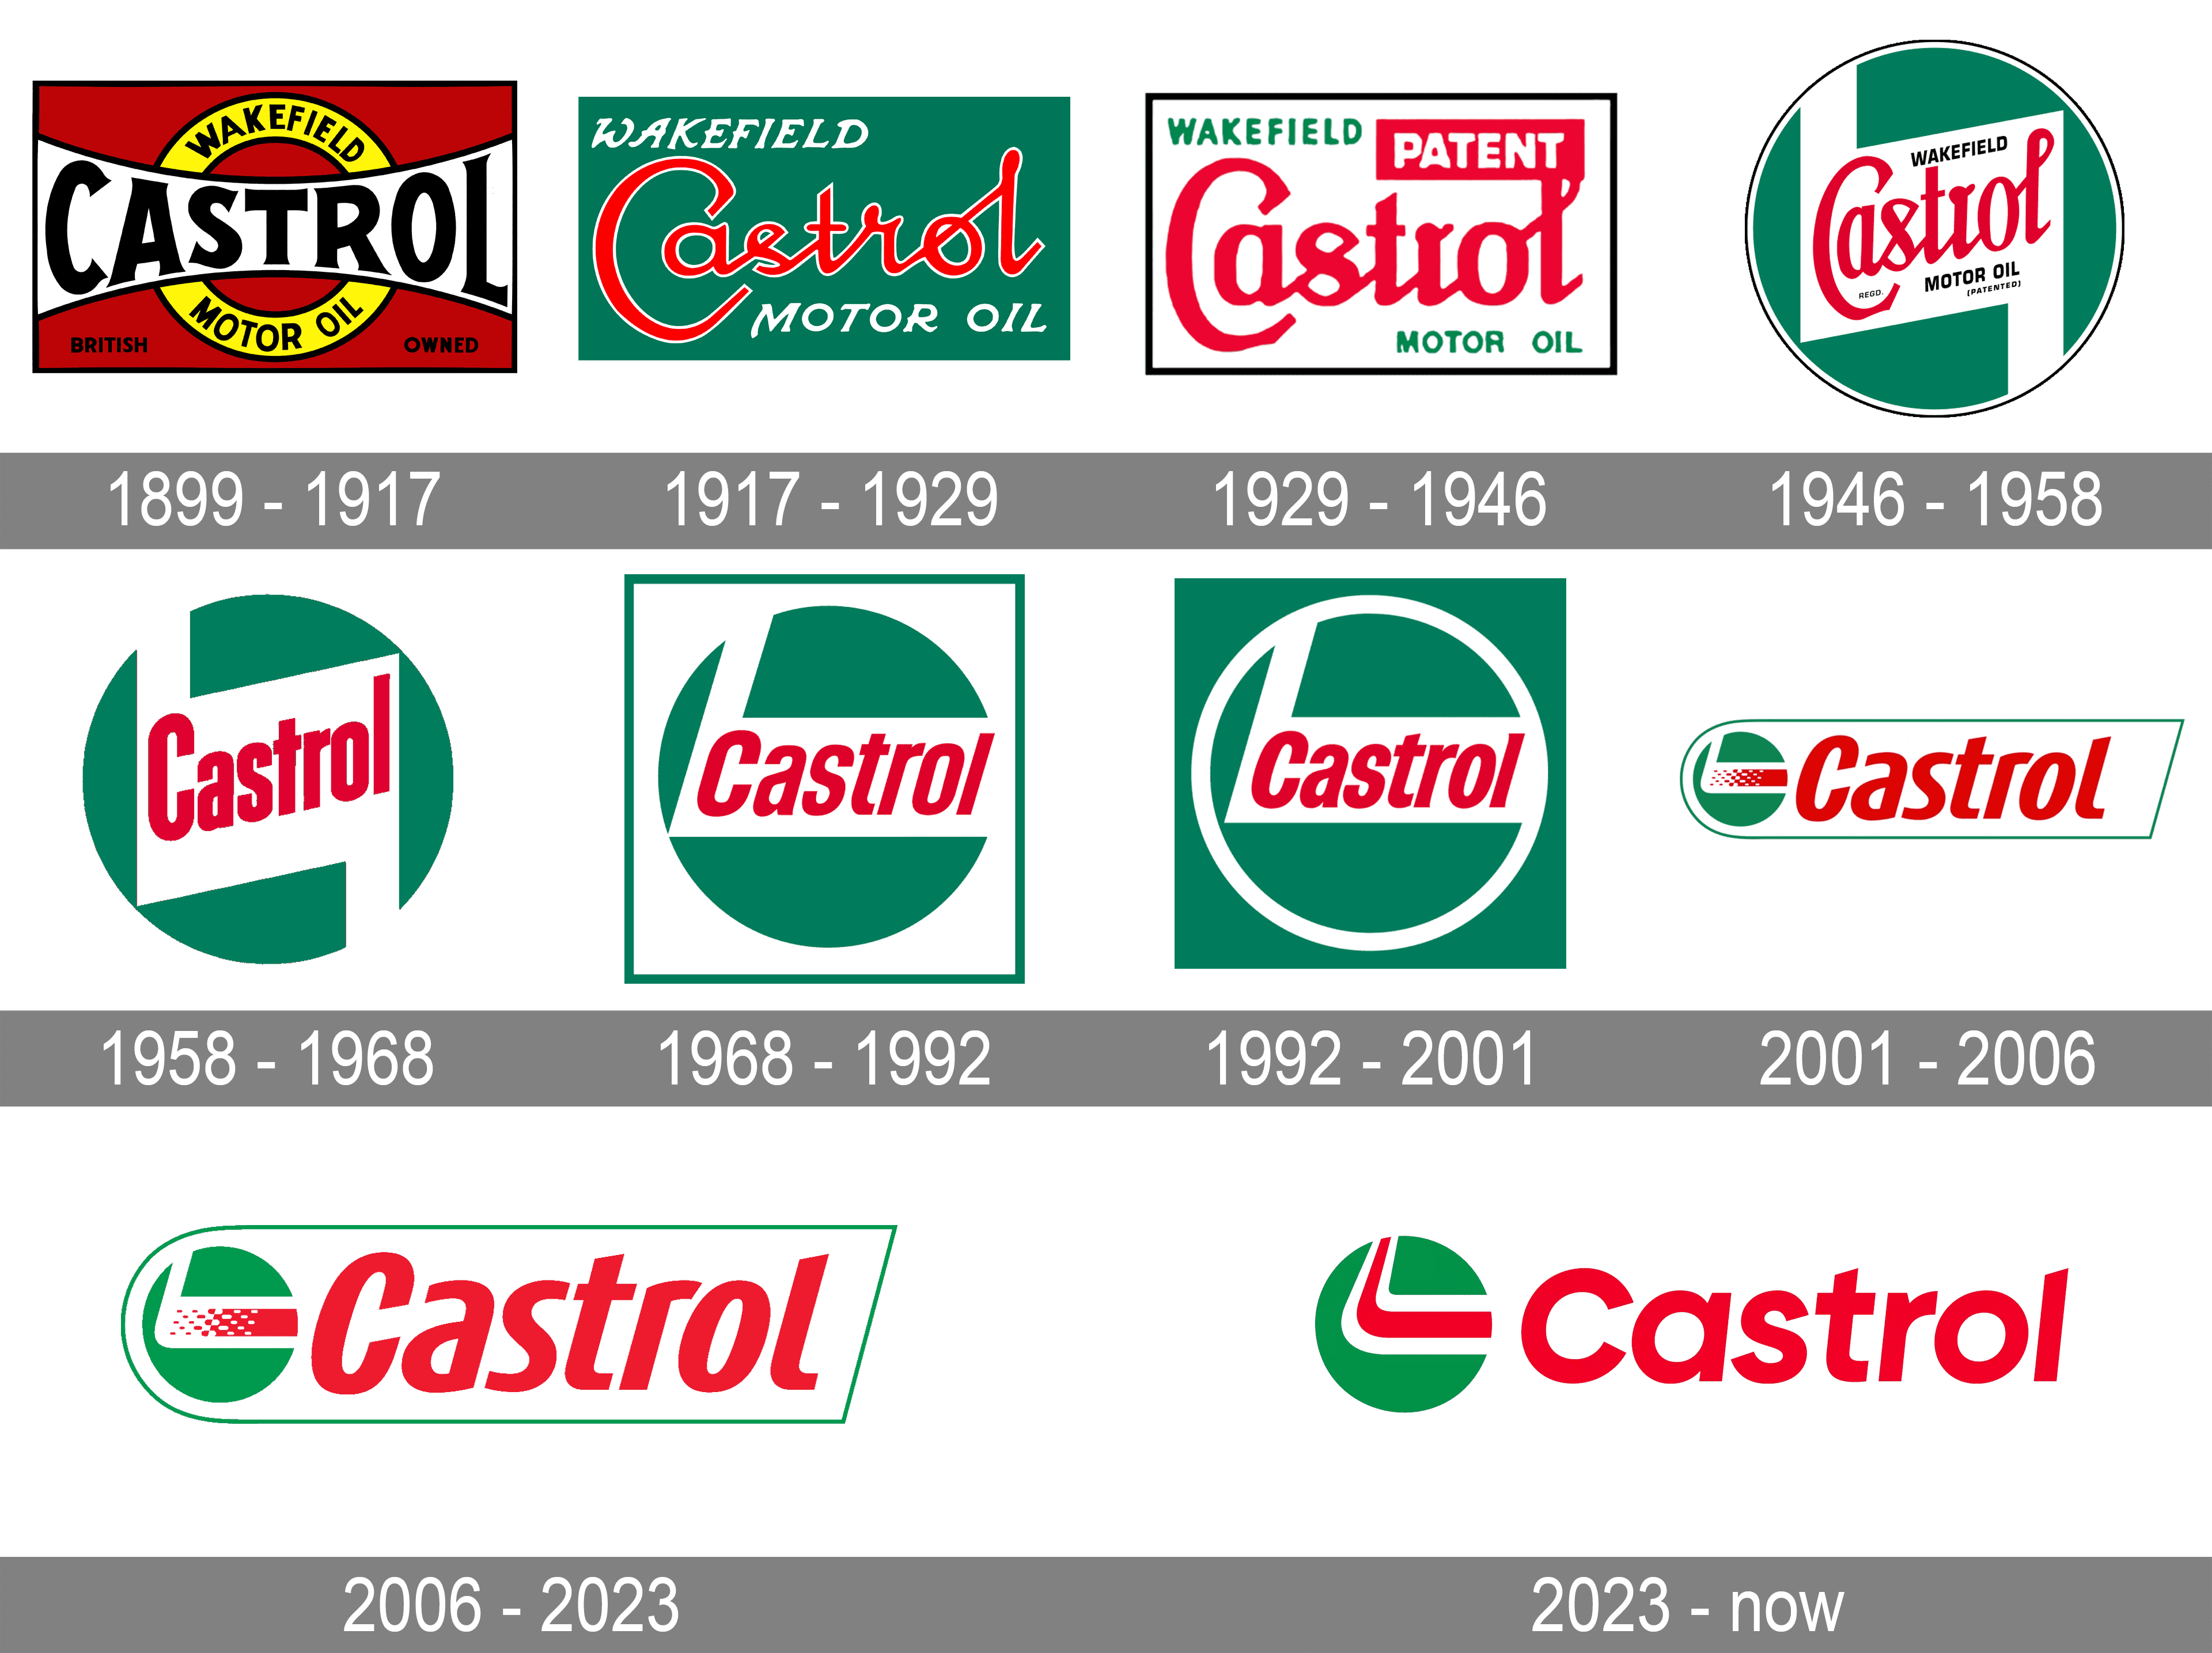 castrol oil logo png